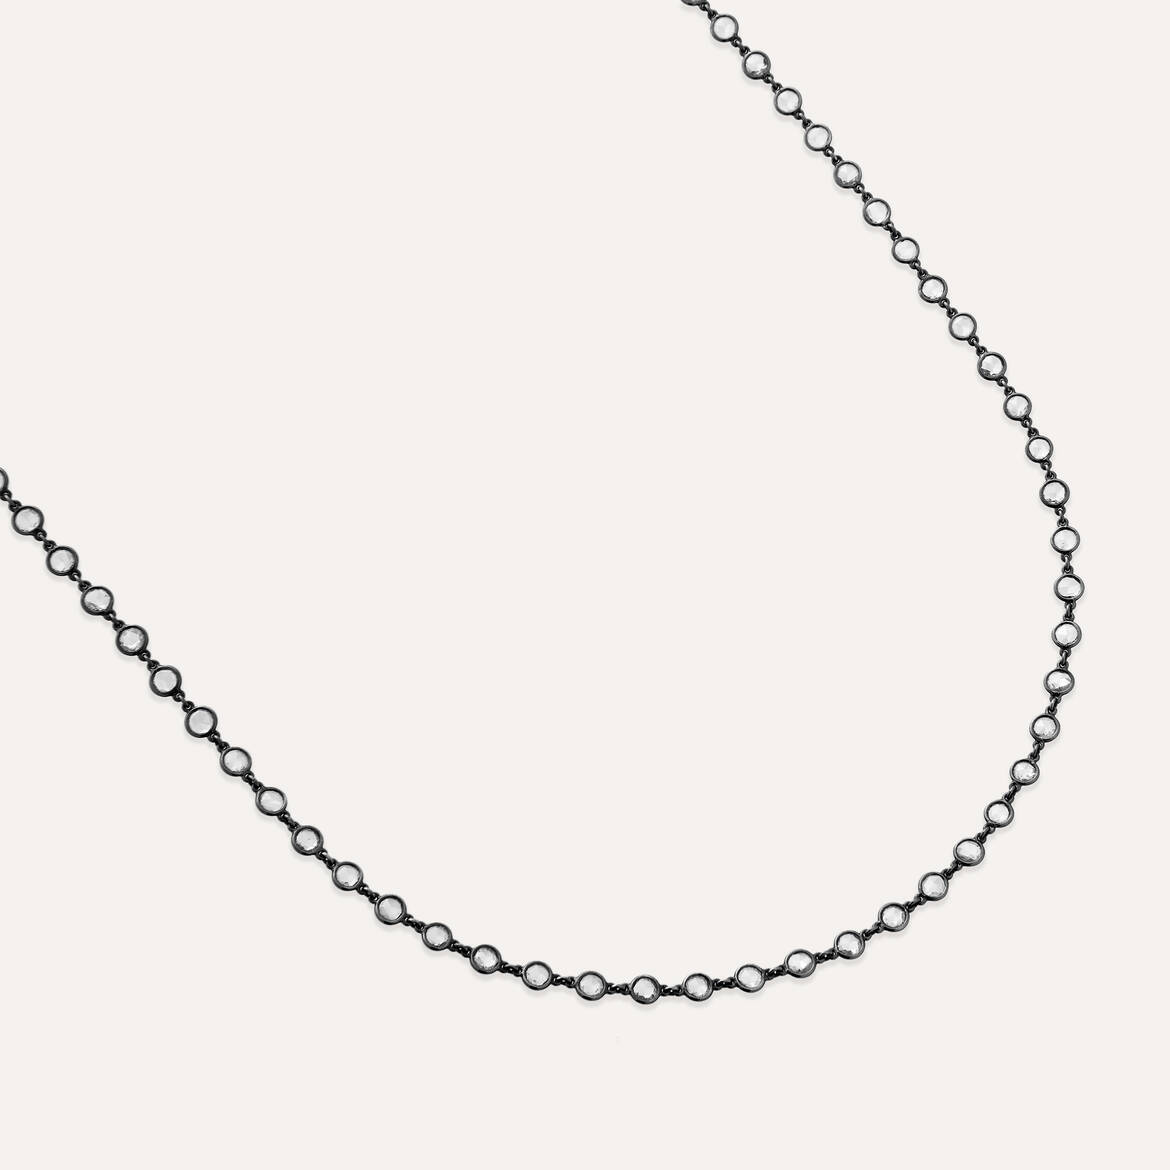 4.77 CT Rose Cut Diamond Necklace